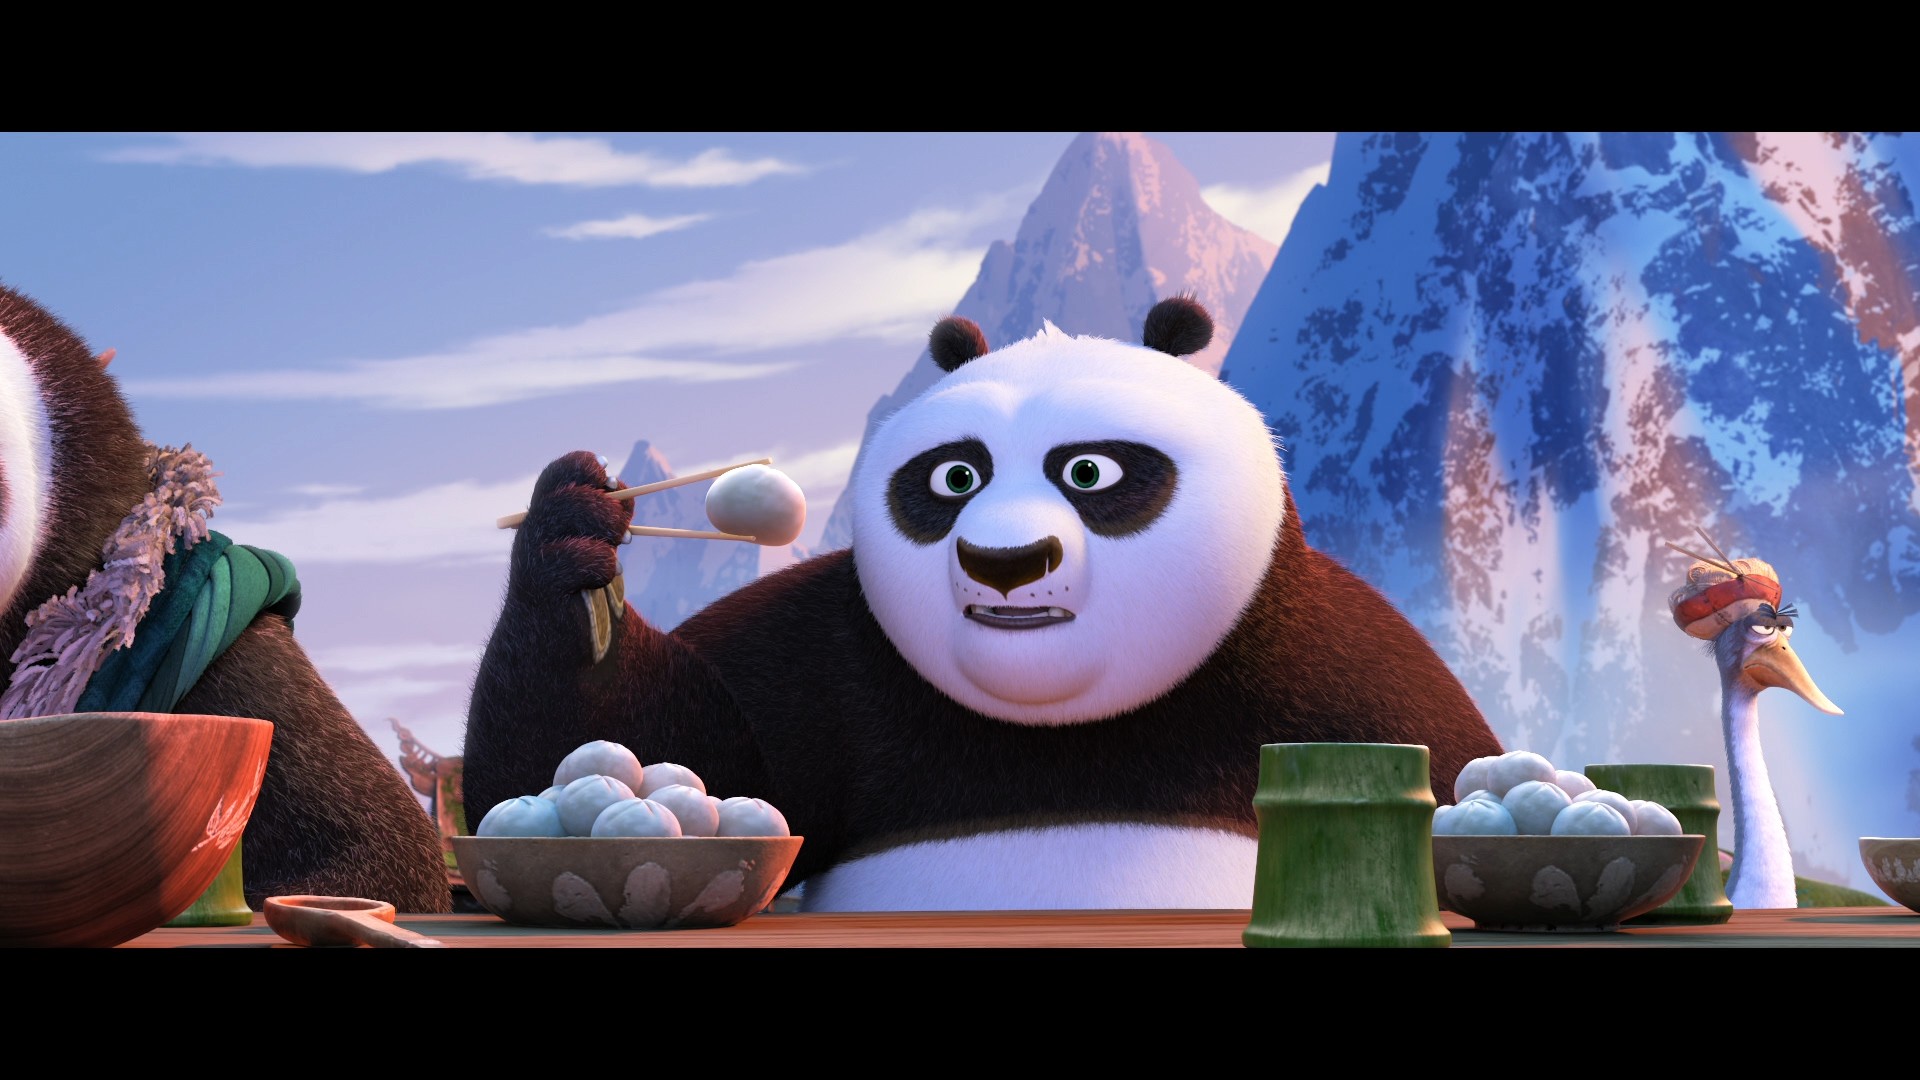 [功夫熊猫3].Kung.Fu.Panda.3.2016.HK.3D.BluRay.1080p.AVC.DTS-HD.MA.7.1-TTG   37.03G-7.jpg